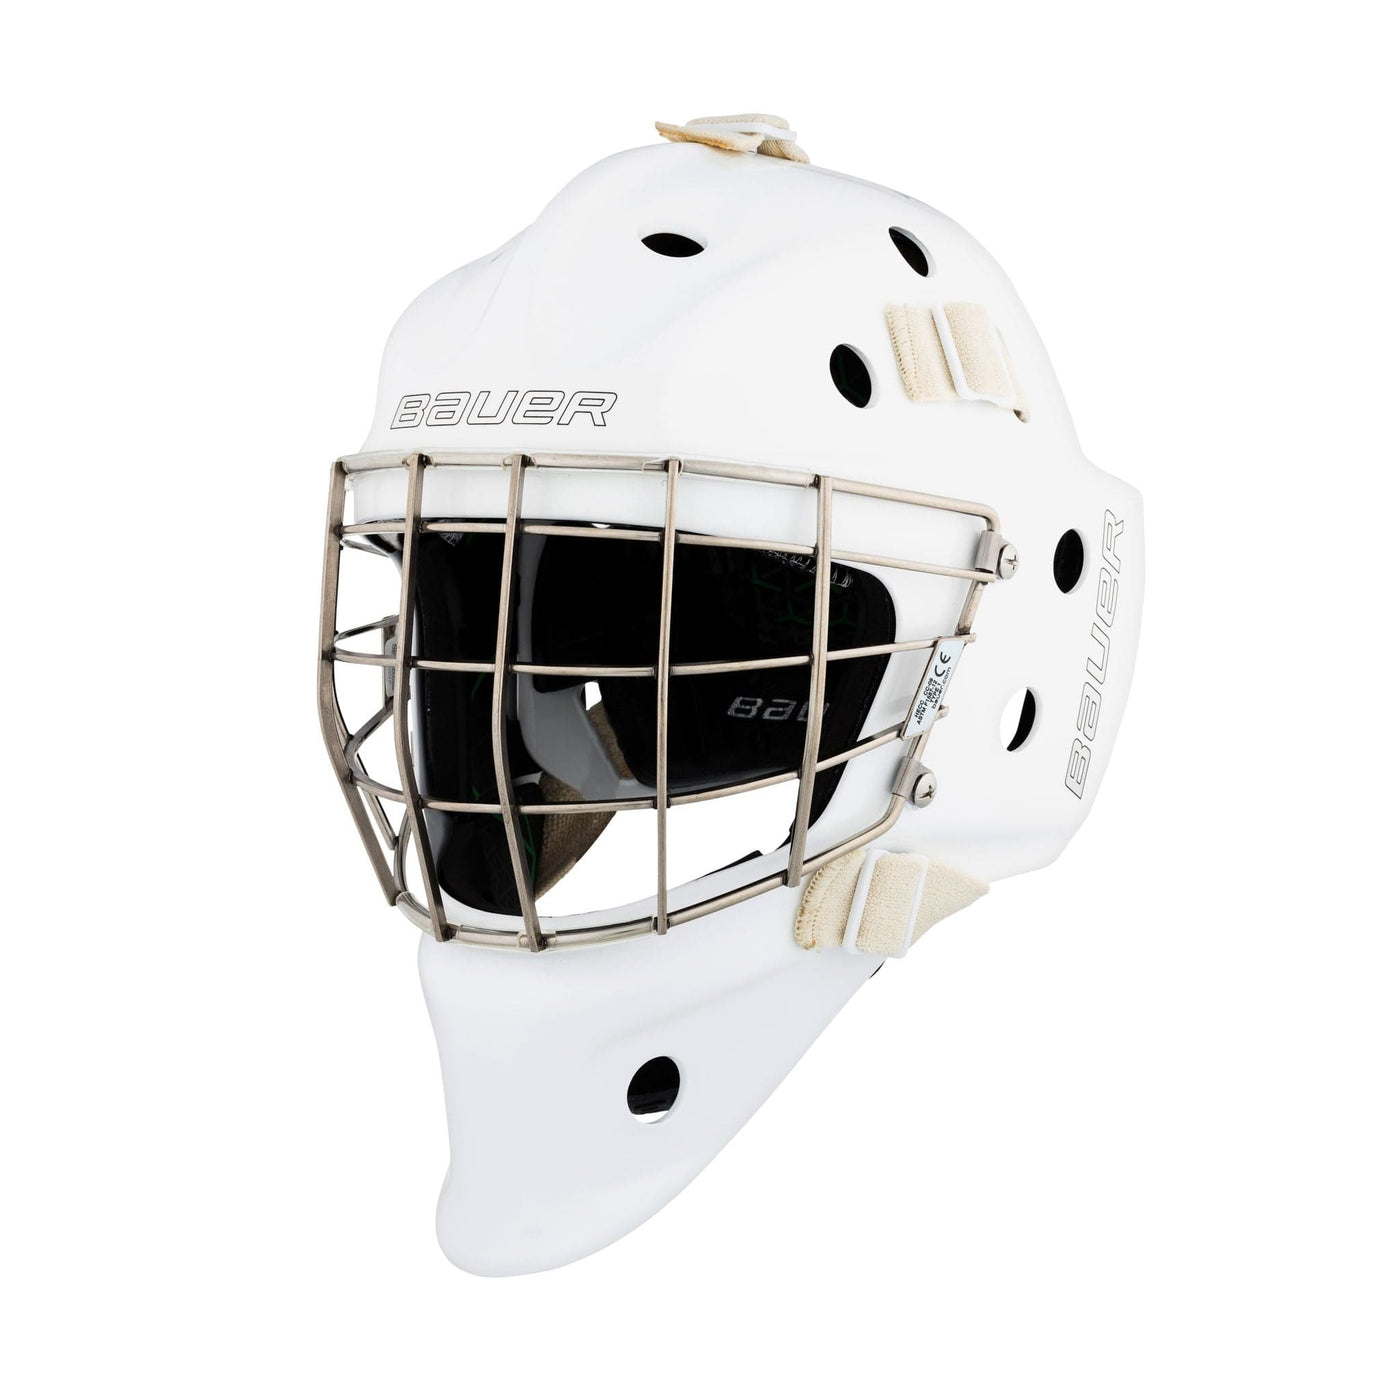 Bauer NME VTX Senior Goalie Mask